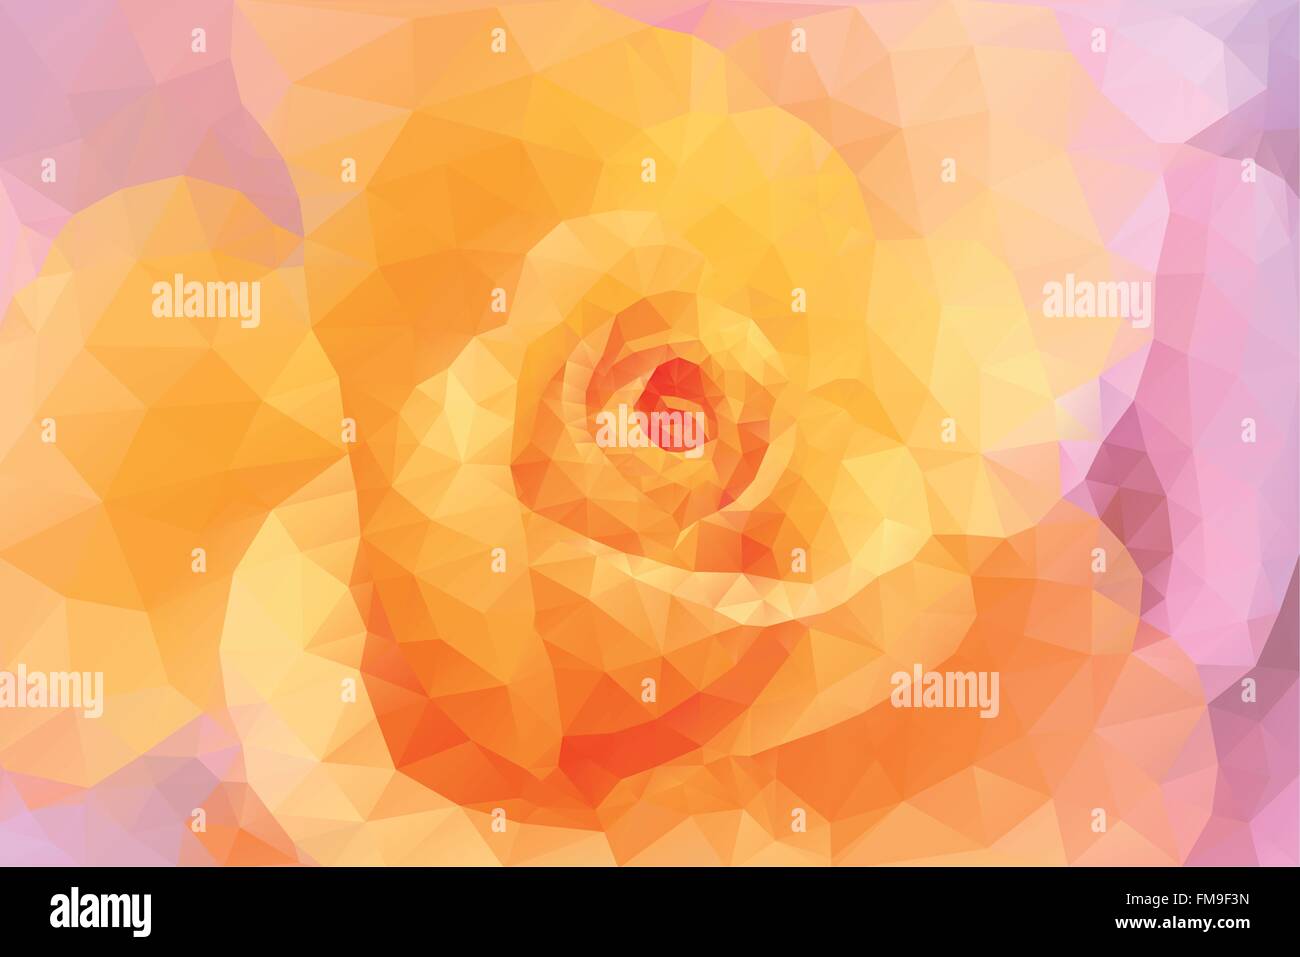 Abstract poligono triangolo floral background colorati in rosa e giallo Illustrazione Vettoriale